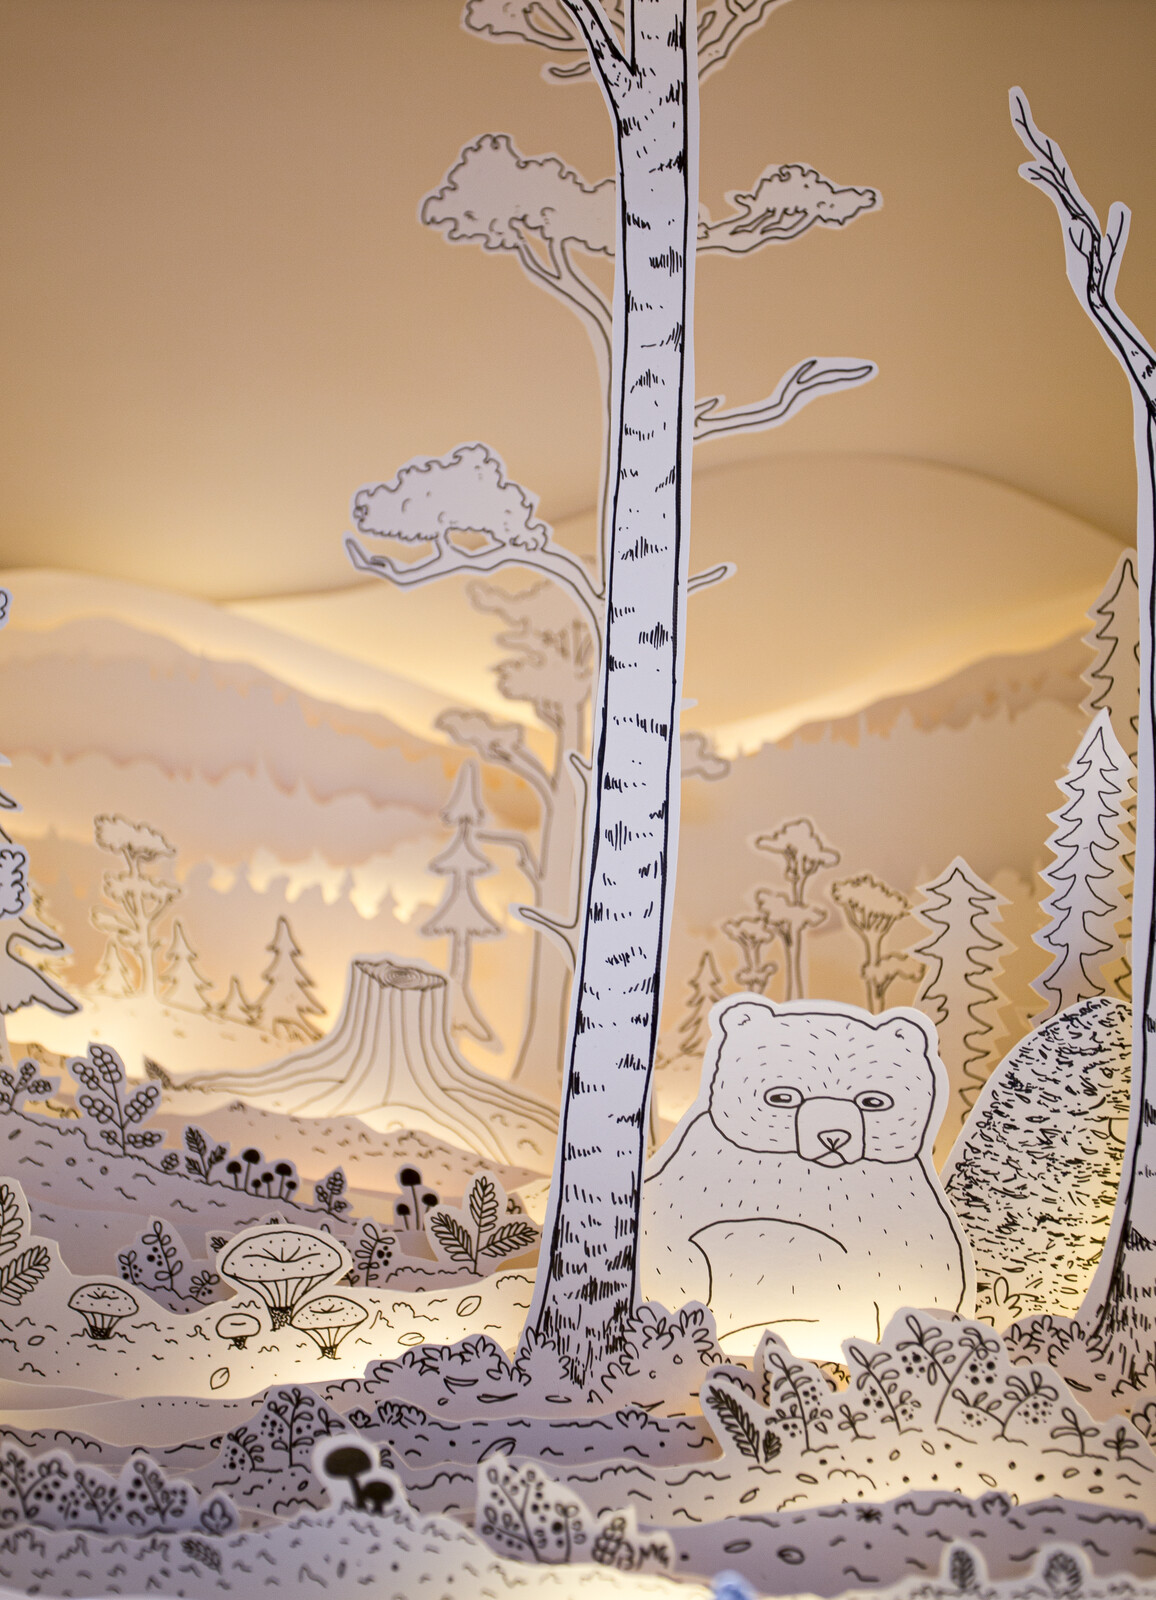 Paper diorama of arctic landscape.